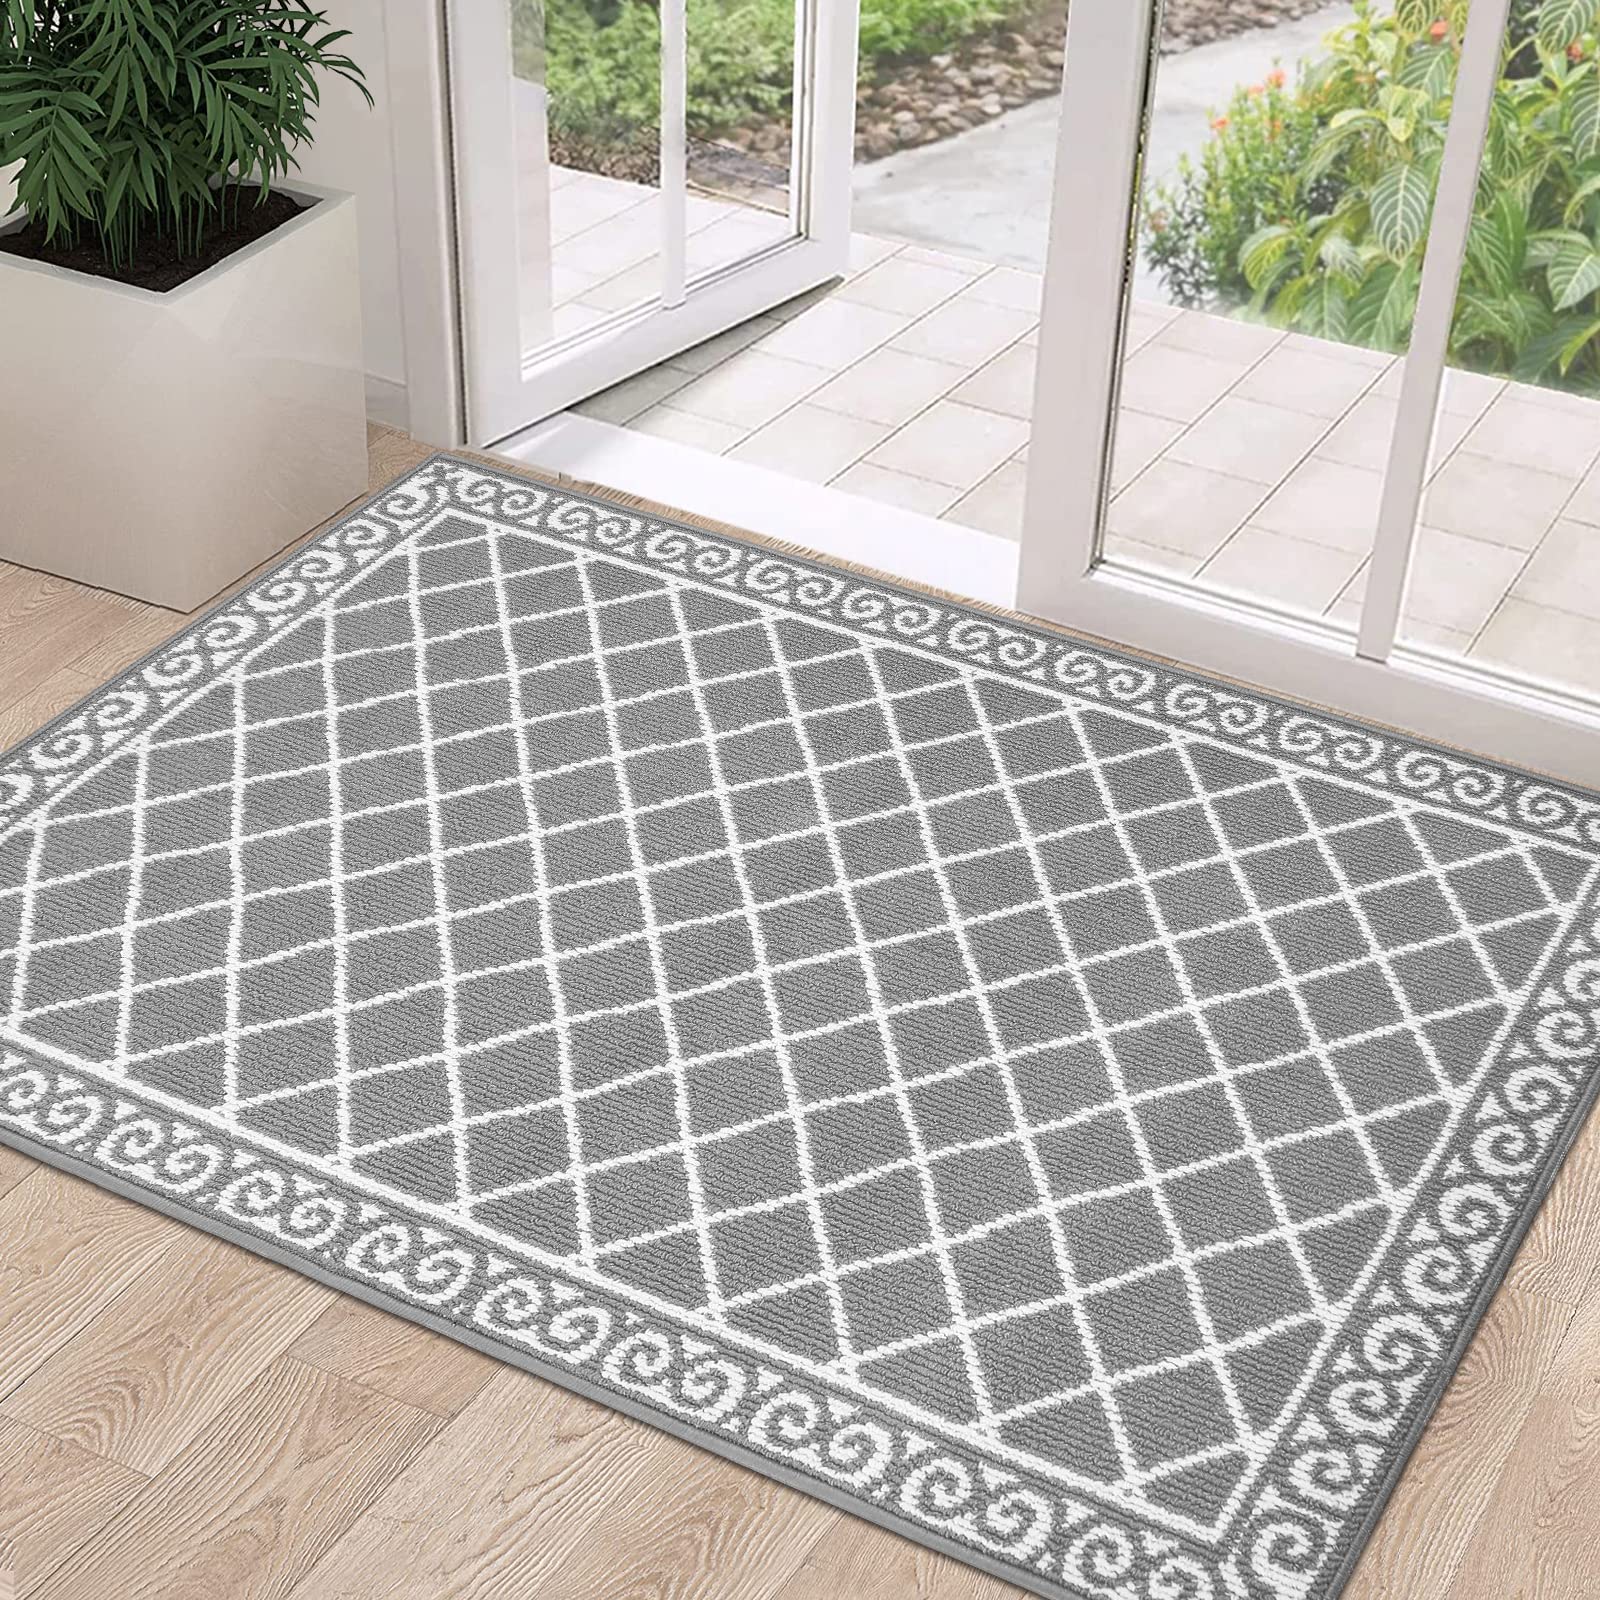 1 Hebe Indoor Doormat 32X48 Non Slip Front Door Welcome Mat Washable Shoe  Mats For Entryway Low Profile Kitchen Floor Carpet For H